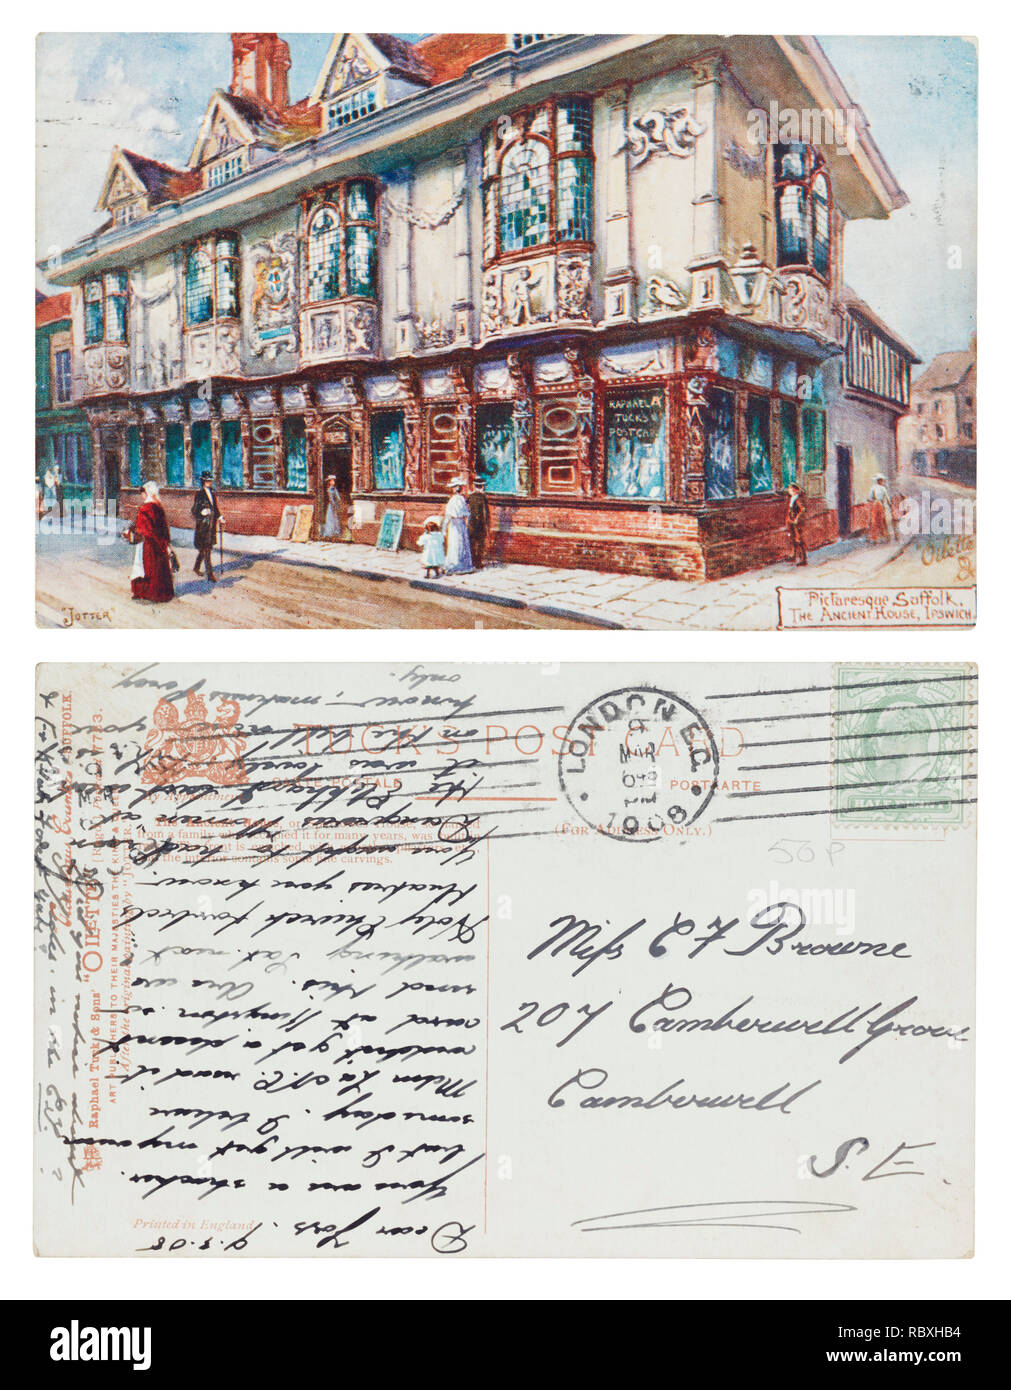 Carte postale de la maison ancienne, l'Ipswich envoyé à Mlle C Browne, 207 Camberwell Grove, Camberwell, Londres en mars 1908 Banque D'Images